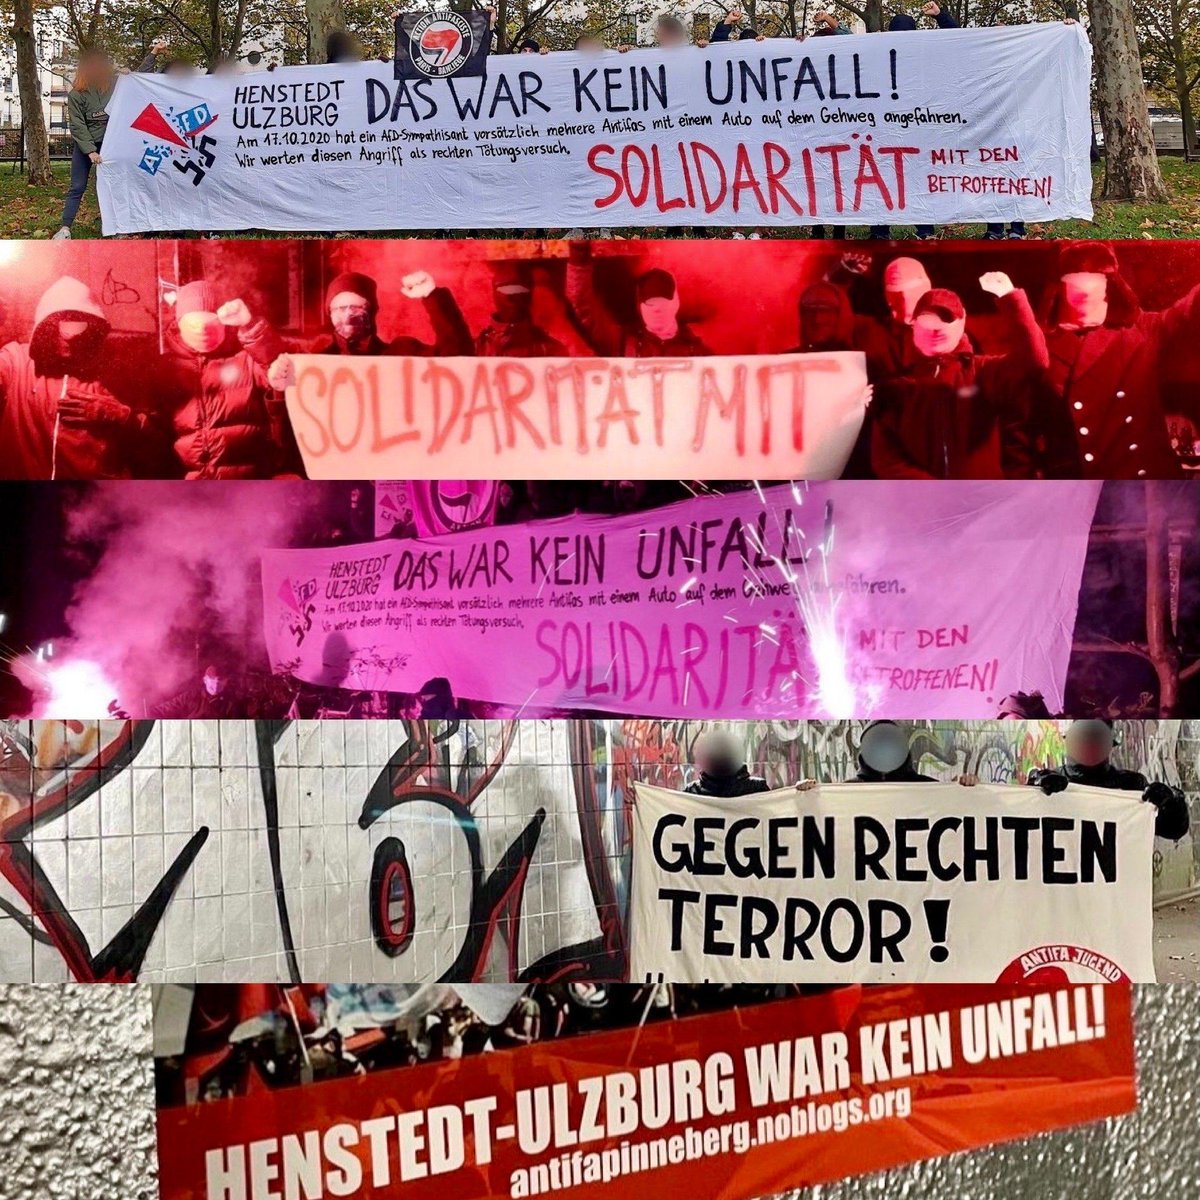 Woche der Solidarität mit den Betroffenen des rechten Tötungsversuch in Henstedt-Ulzburg: antifapinneberg.noblogs.org/post/2021/10/2… #Antifa #NoNazis #NoAfD #HenstedtUlzburg #Solidarität #RechtenTerrorStoppen #NoNazisSH #NoNazisHH